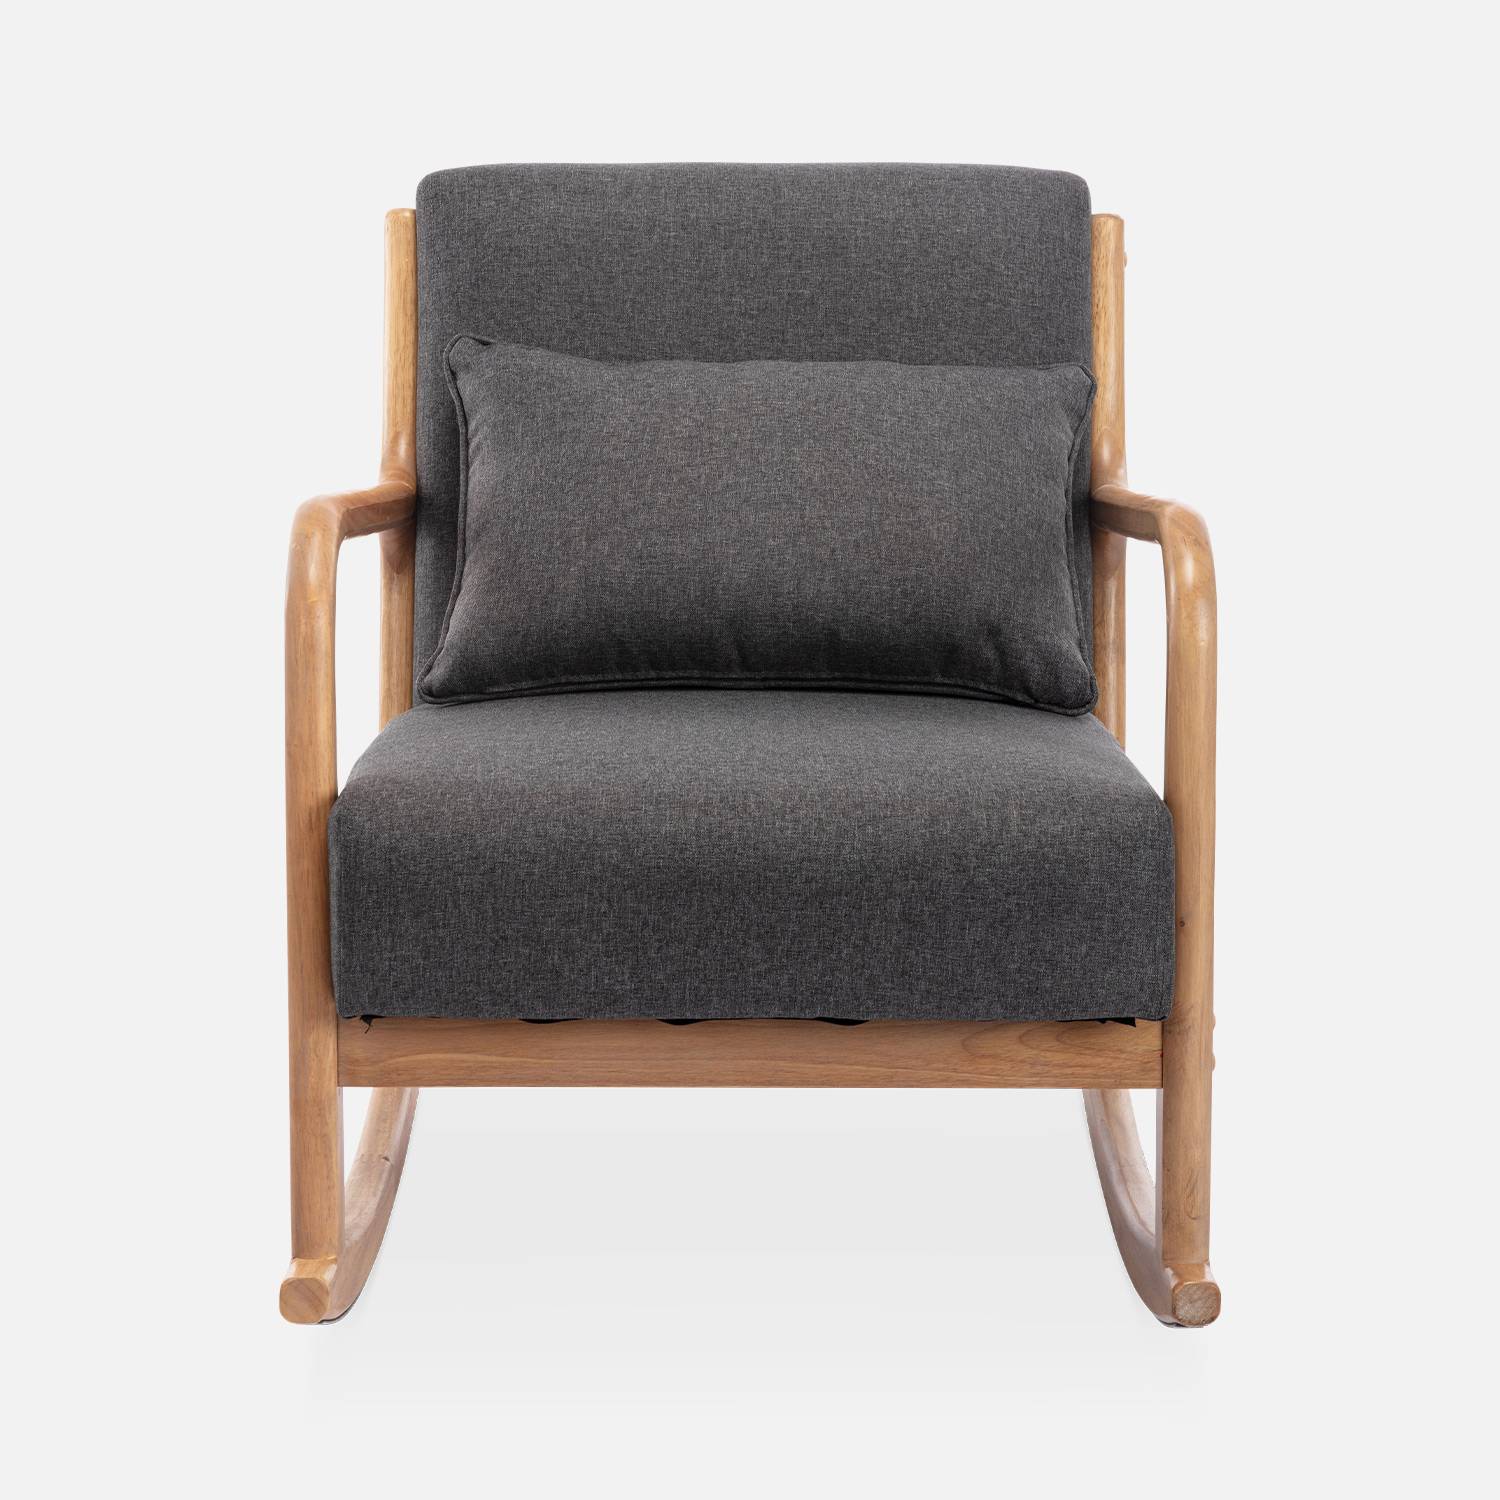 Fauteuil à bascule design en bois et tissu, 1 place, rocking chair scandinave, gris foncé Photo4